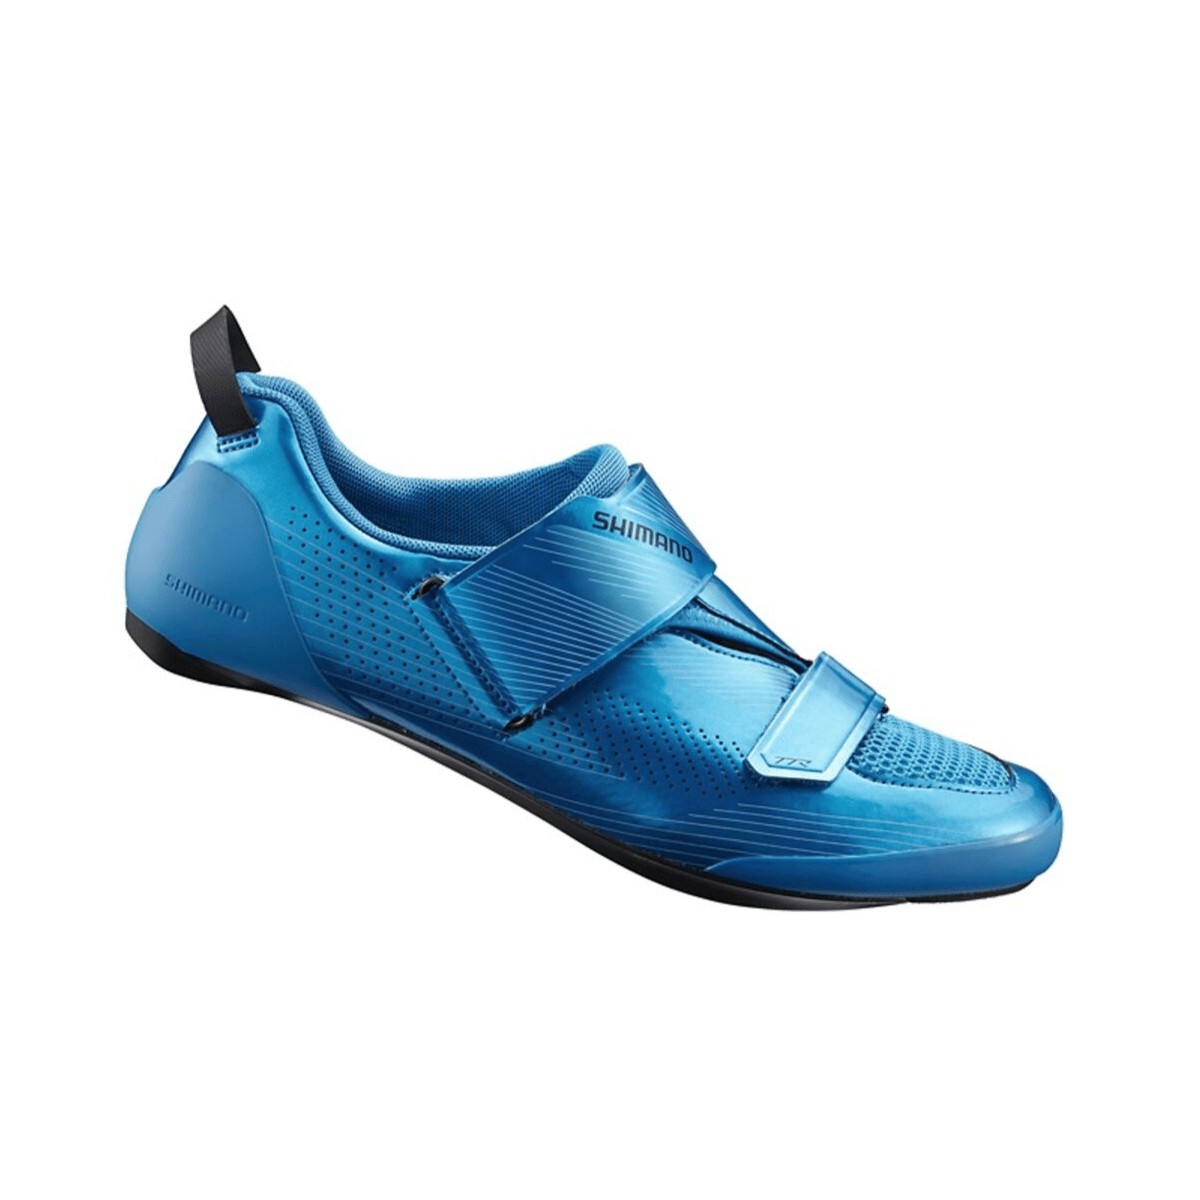 blau.de günstig Kaufen-Shimano TR9 Triathlonschuhe blau, Größe 46 - EUR. Shimano TR9 Triathlonschuhe blau, Größe 46 - EUR . 